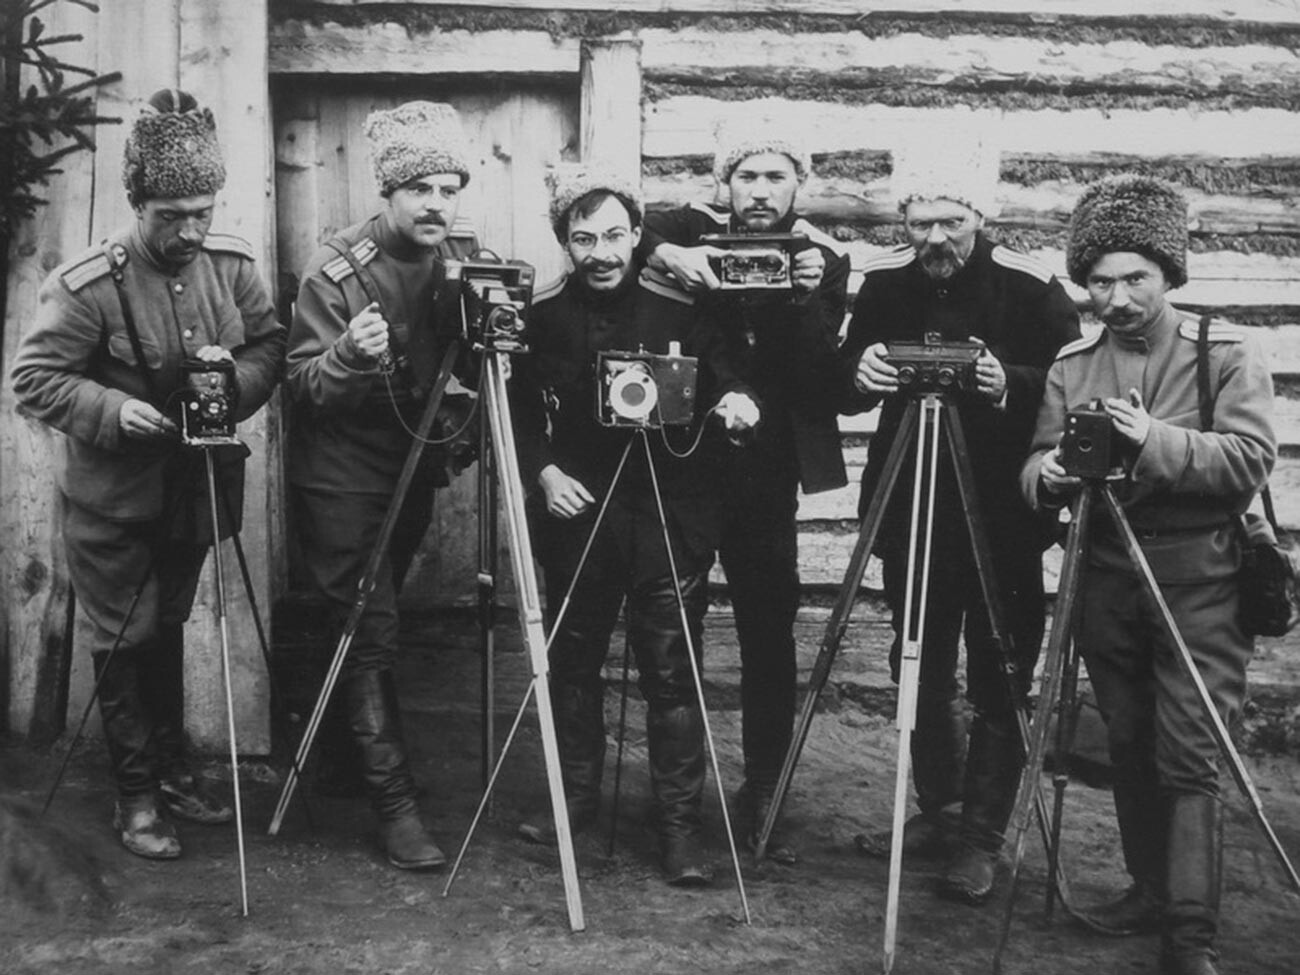 Des photographes de la 10e Division d’infanterie de l’Armée impériale russe.
